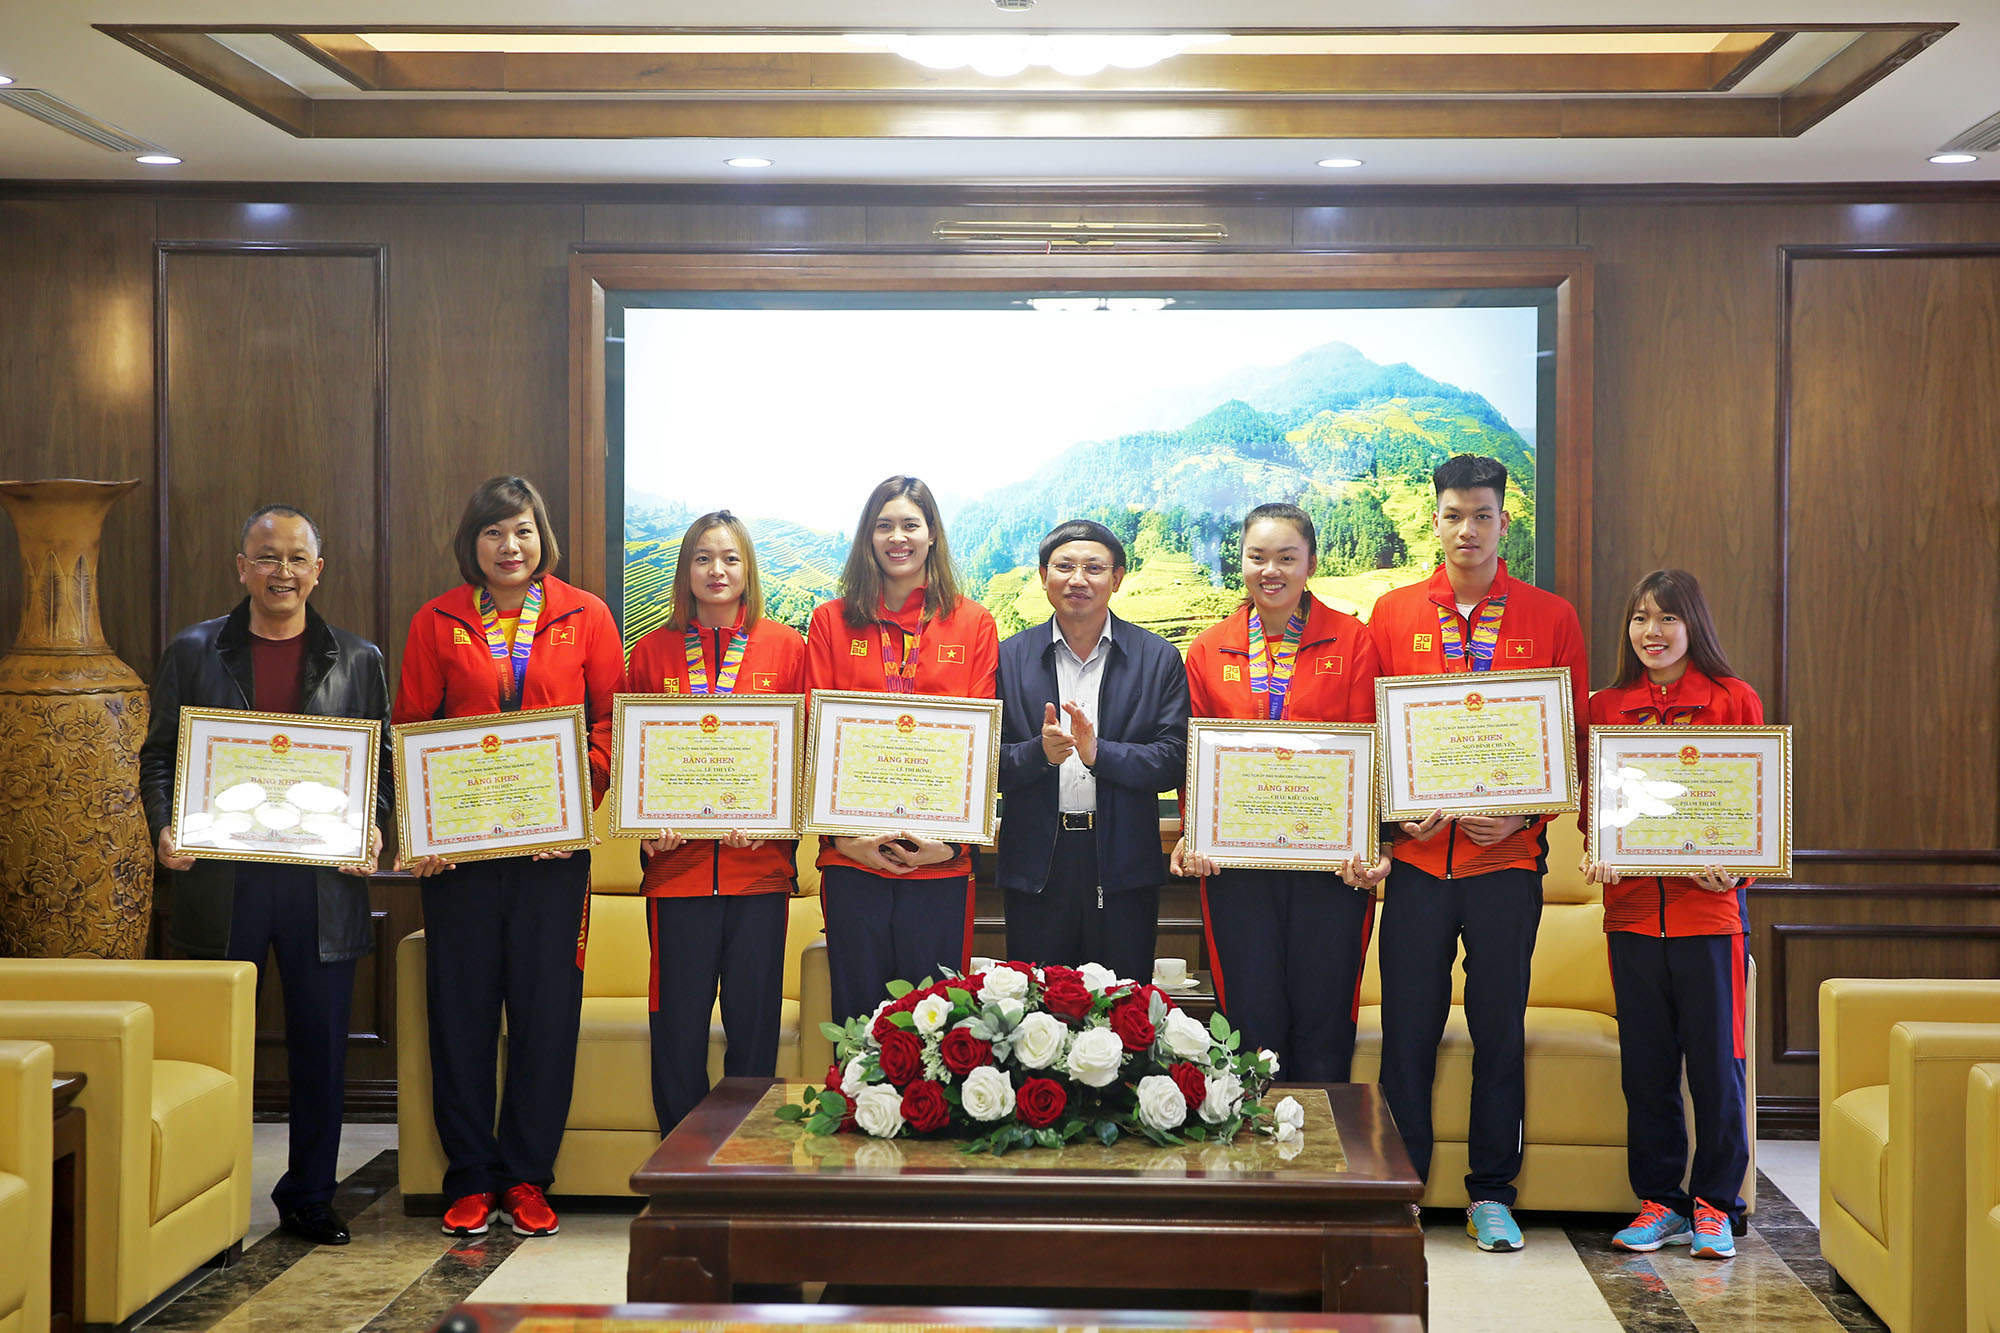 Bí thư Tỉnh ủy Nguyễn Xuân Ký trao Bằng khen của tỉnh cho các VĐV VĐV có đóng góp cho Đoàn thể thao Việt Nam tại kỳ Đại hội thể thao Đông Nam Á (SEA Games) lần thứ 30